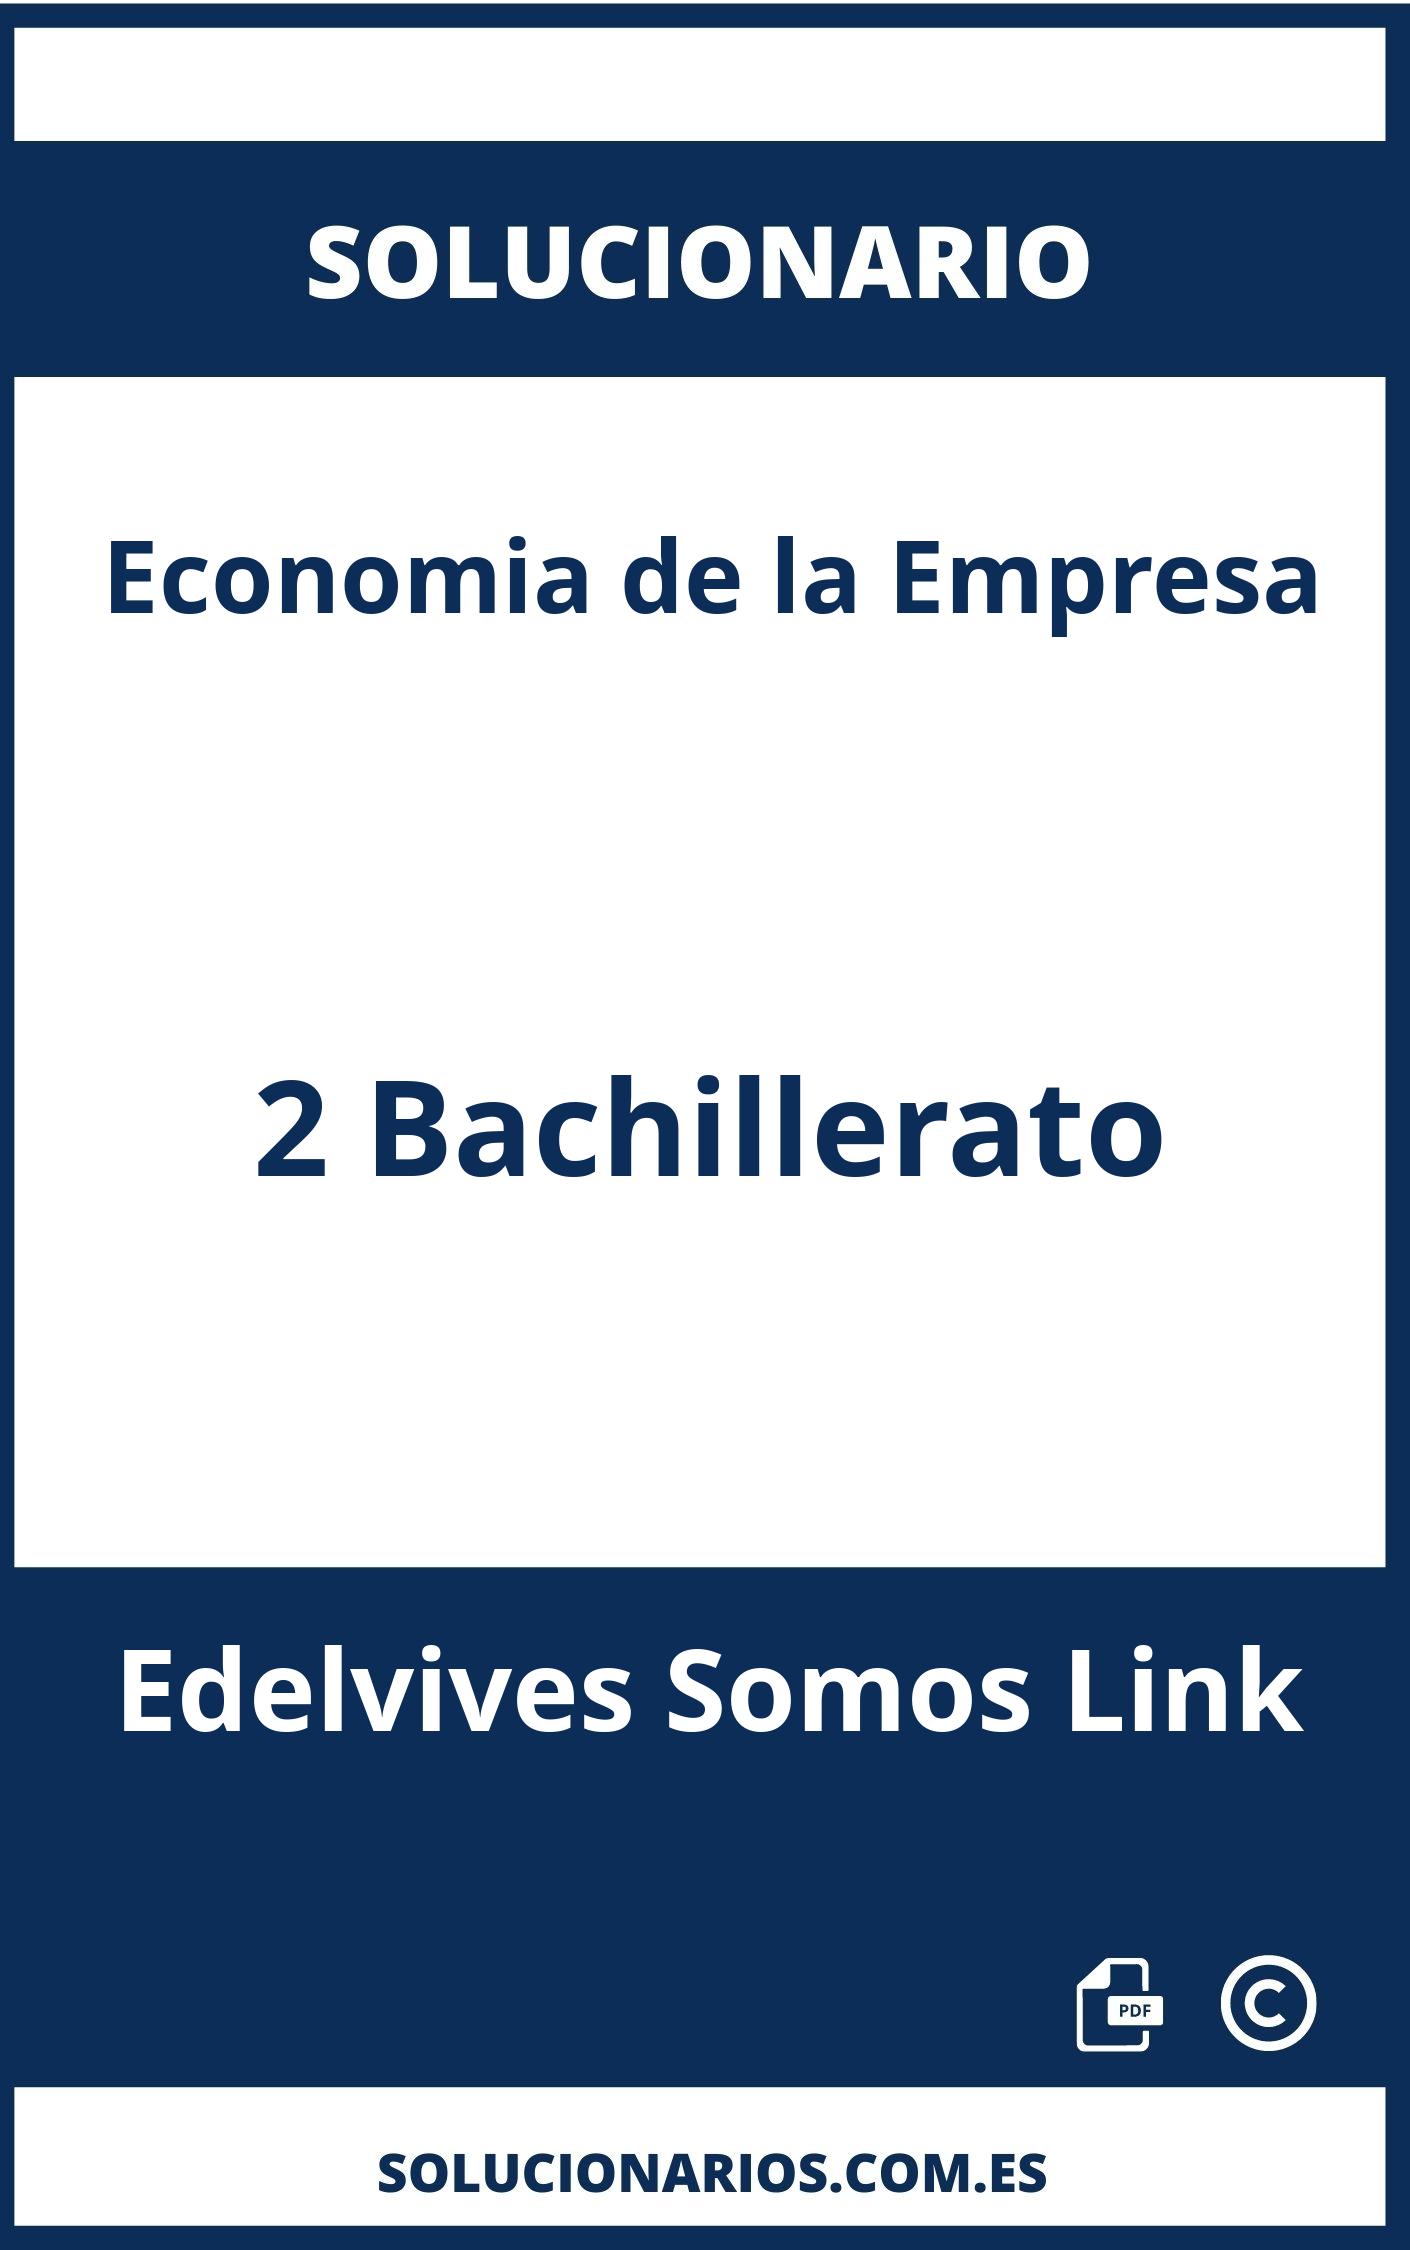 Solucionario De Economia De La Empresa 2 Bachillerato Edelvives Somos Link 1389